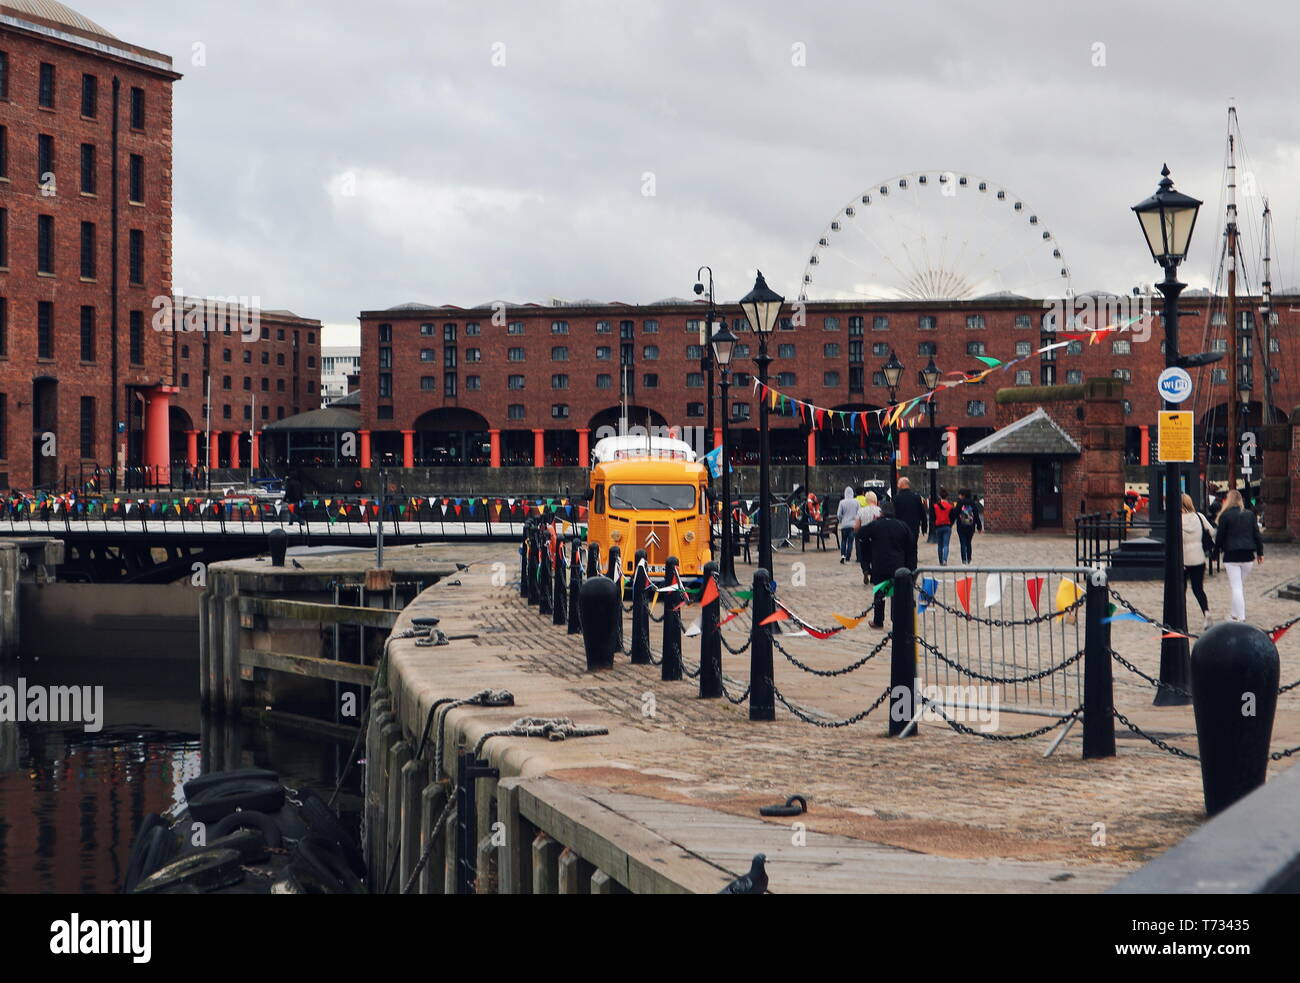 Ein gelbes Fahrzeug vor Rot-braune Backsteinhäuser und ein Riesenrad in Liverpool. Stockfoto